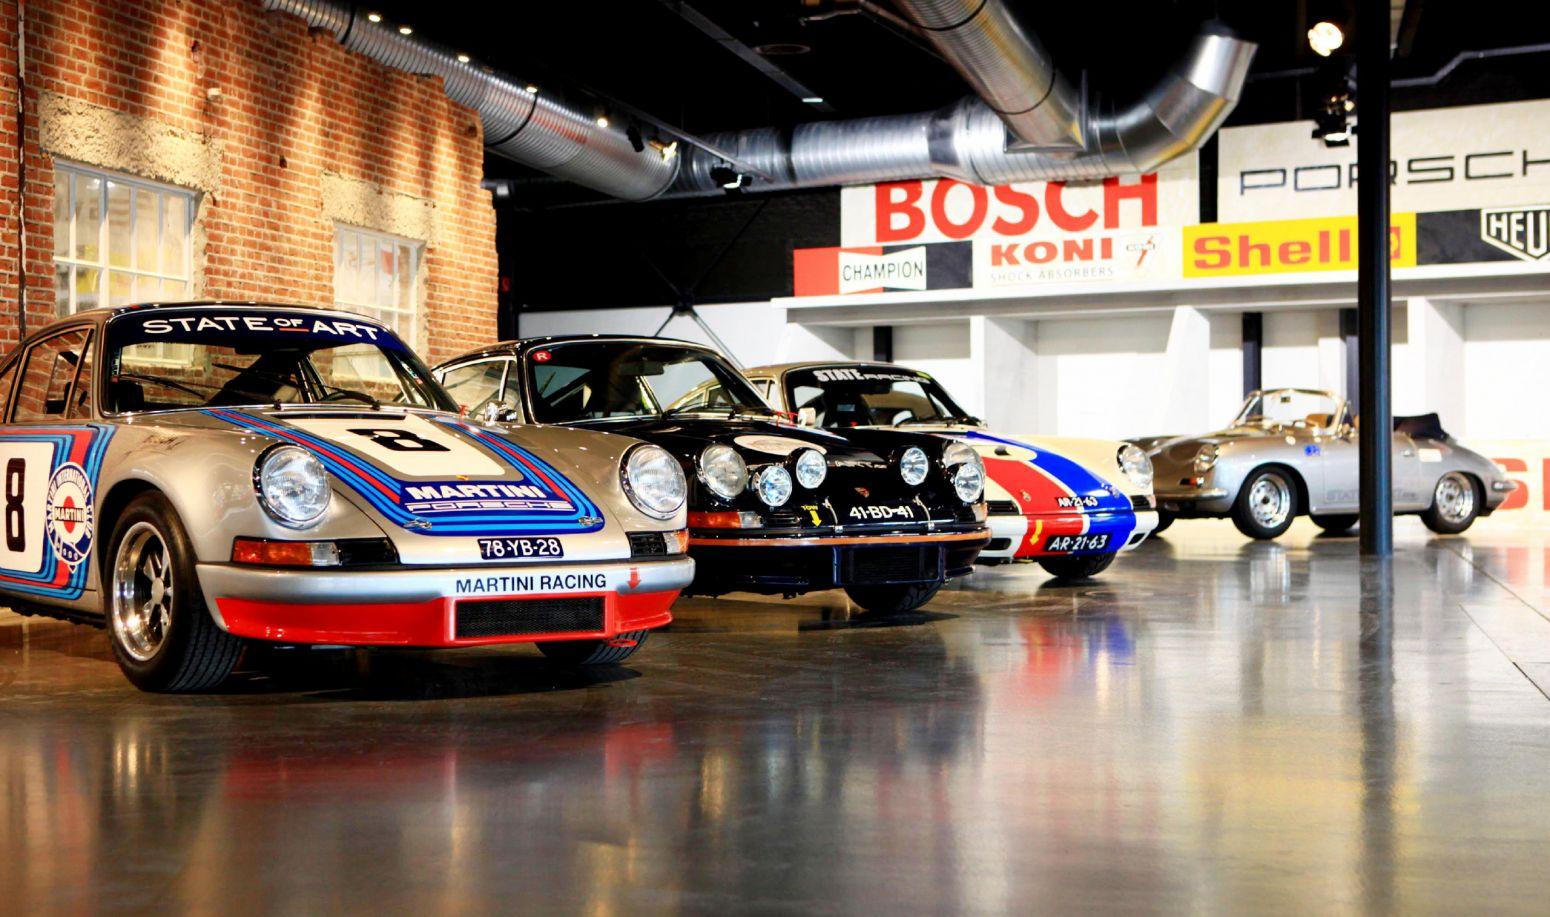 Bijzondere Porsche collectie van Art naar eerste AMK Festival – Oldtimers in Auto Motor Klassiek